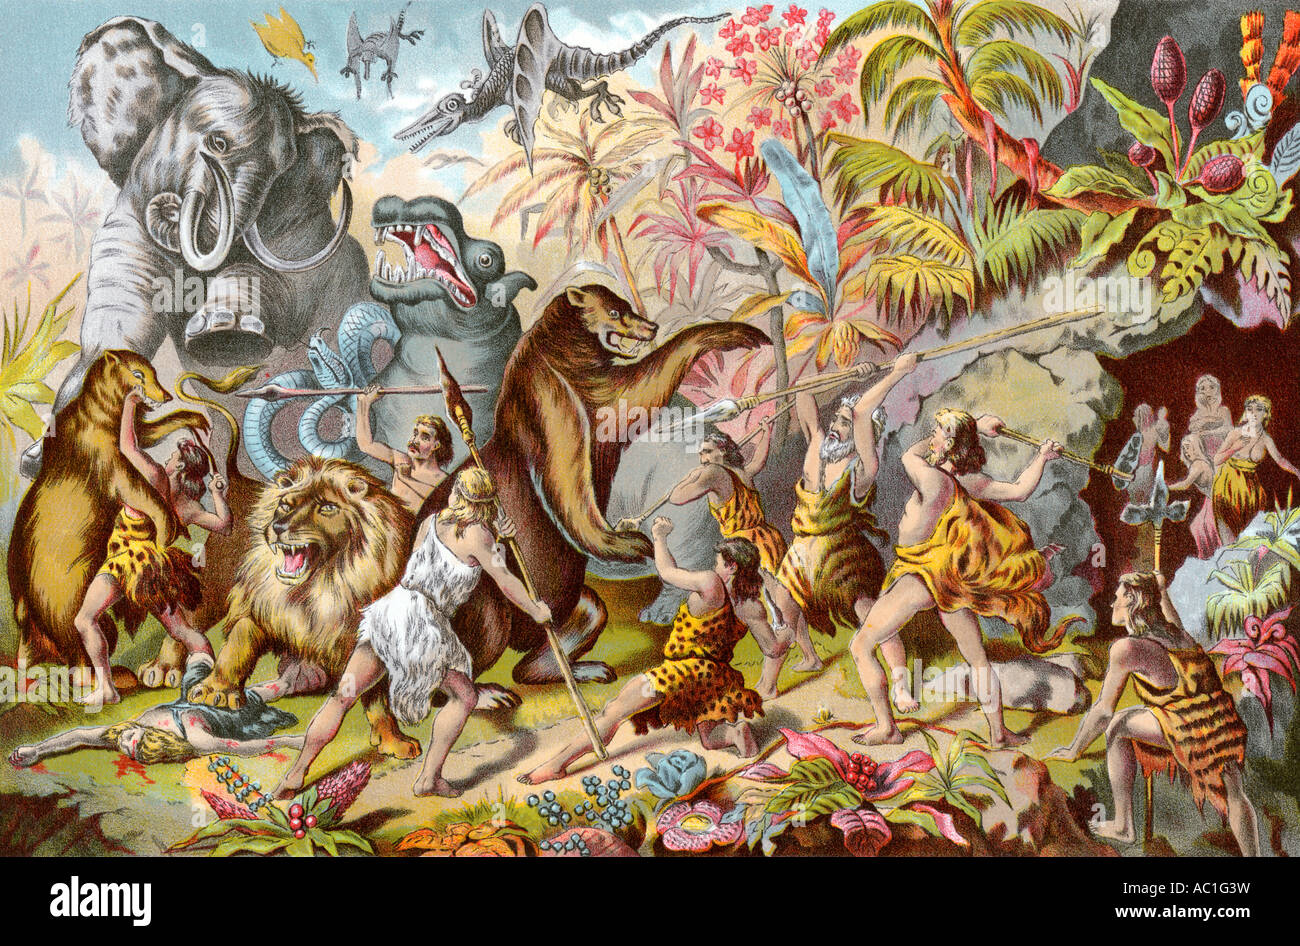 Cuevas compitiendo con monstruos prehistóricos según un siglo xix illustrator. Semitono de color de ilustración. Foto de stock